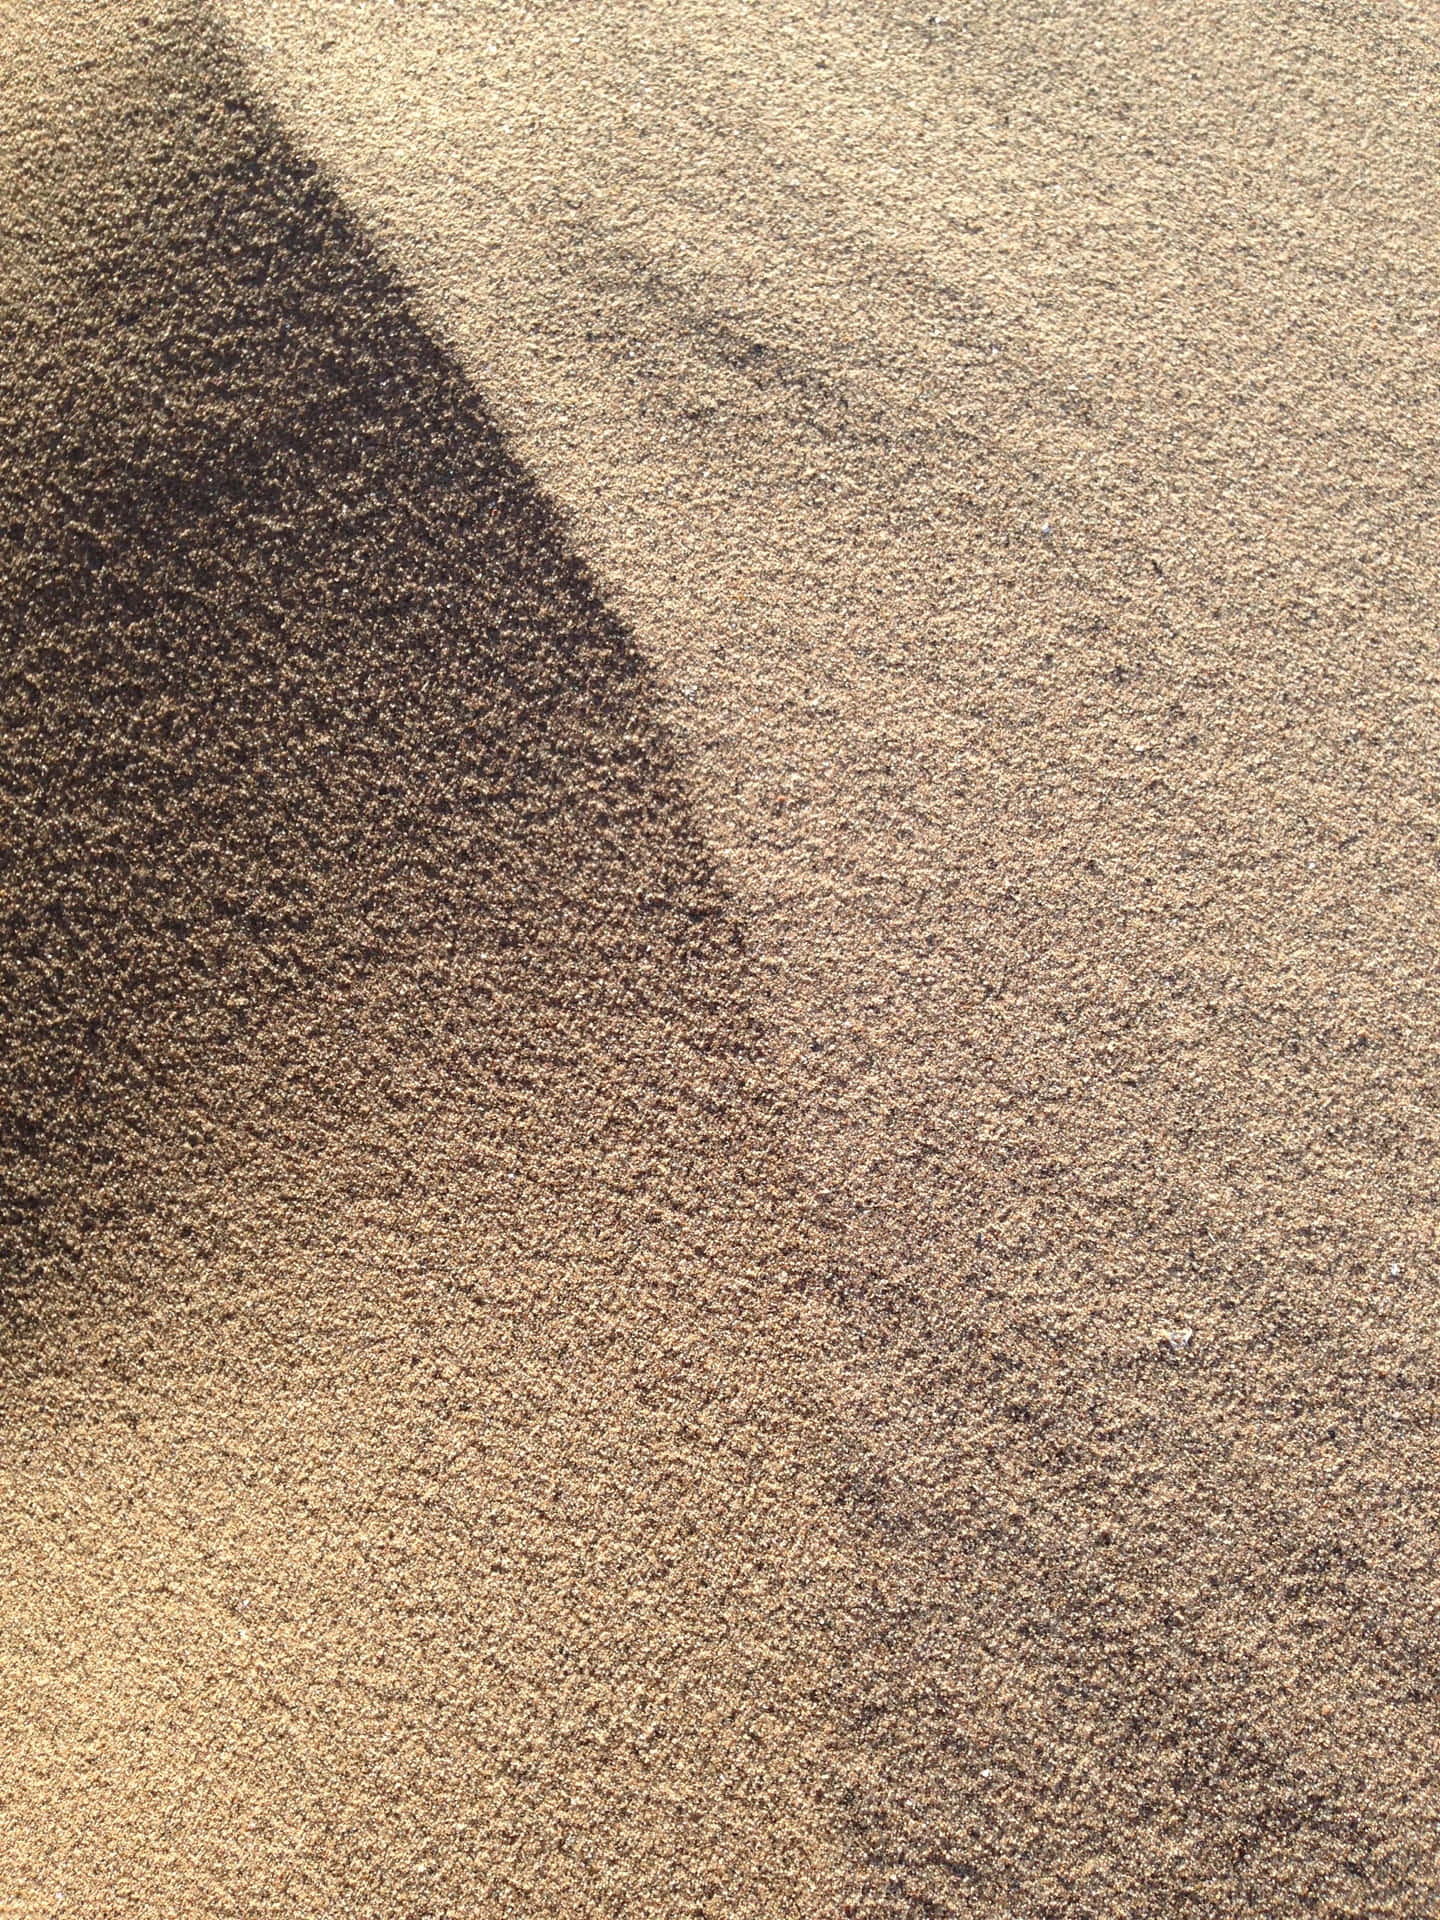 Close-up Sand Dune Desert Wallpaper